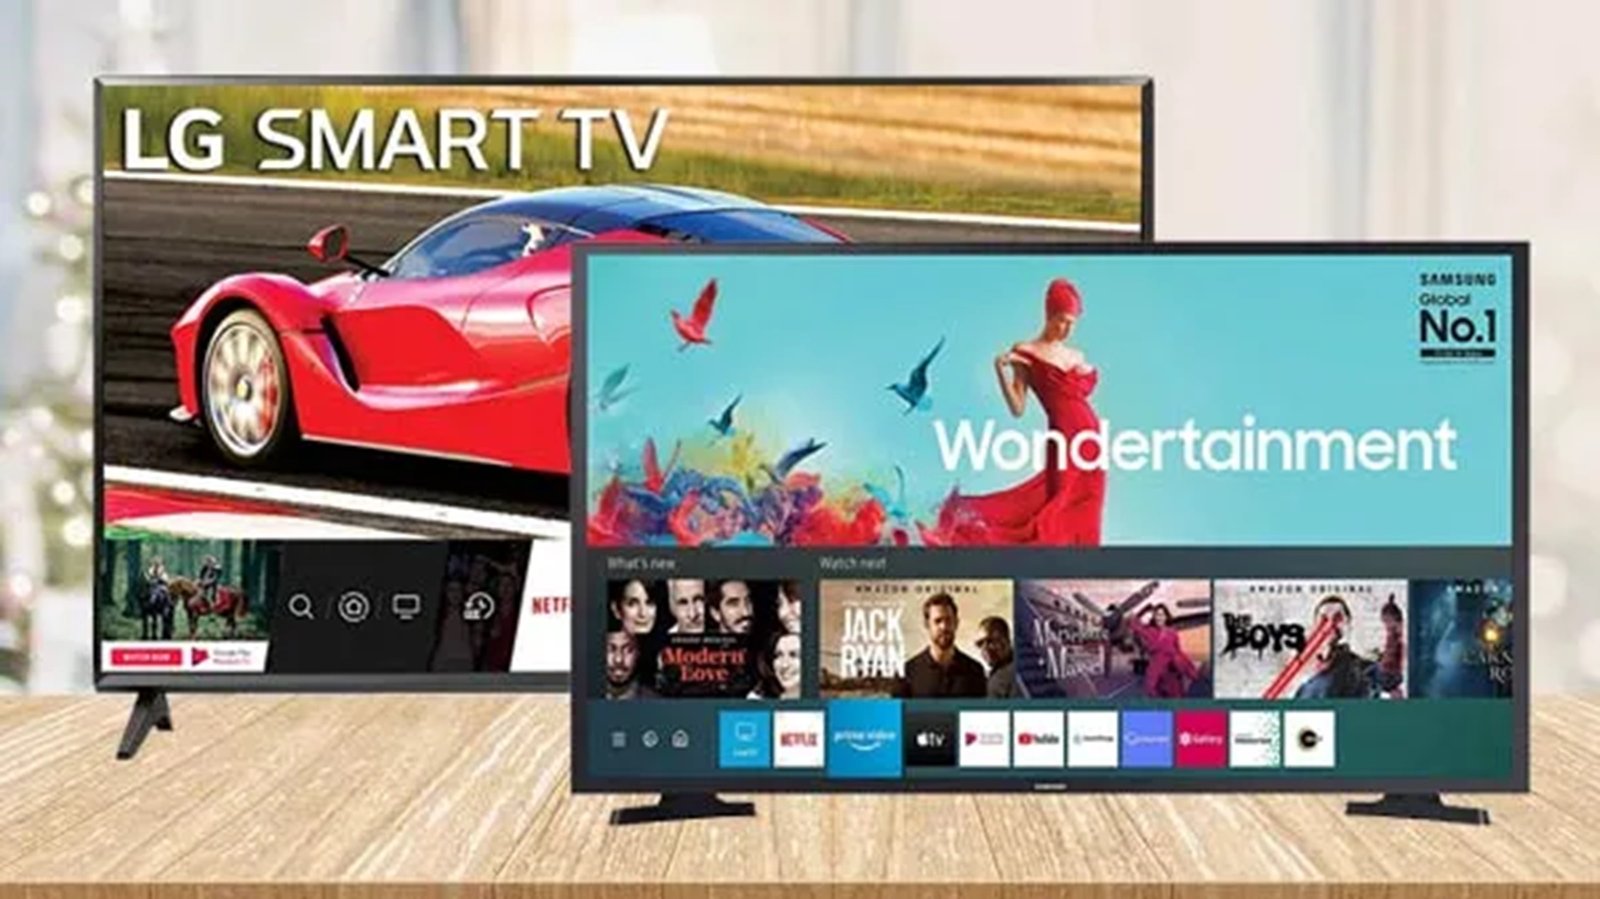 Smart Tv Discount Offer - 32 इंच वाले इस Smart Tv पर आया भारी डिस्काउंट, जानिए कैसे उठाये लाभ,